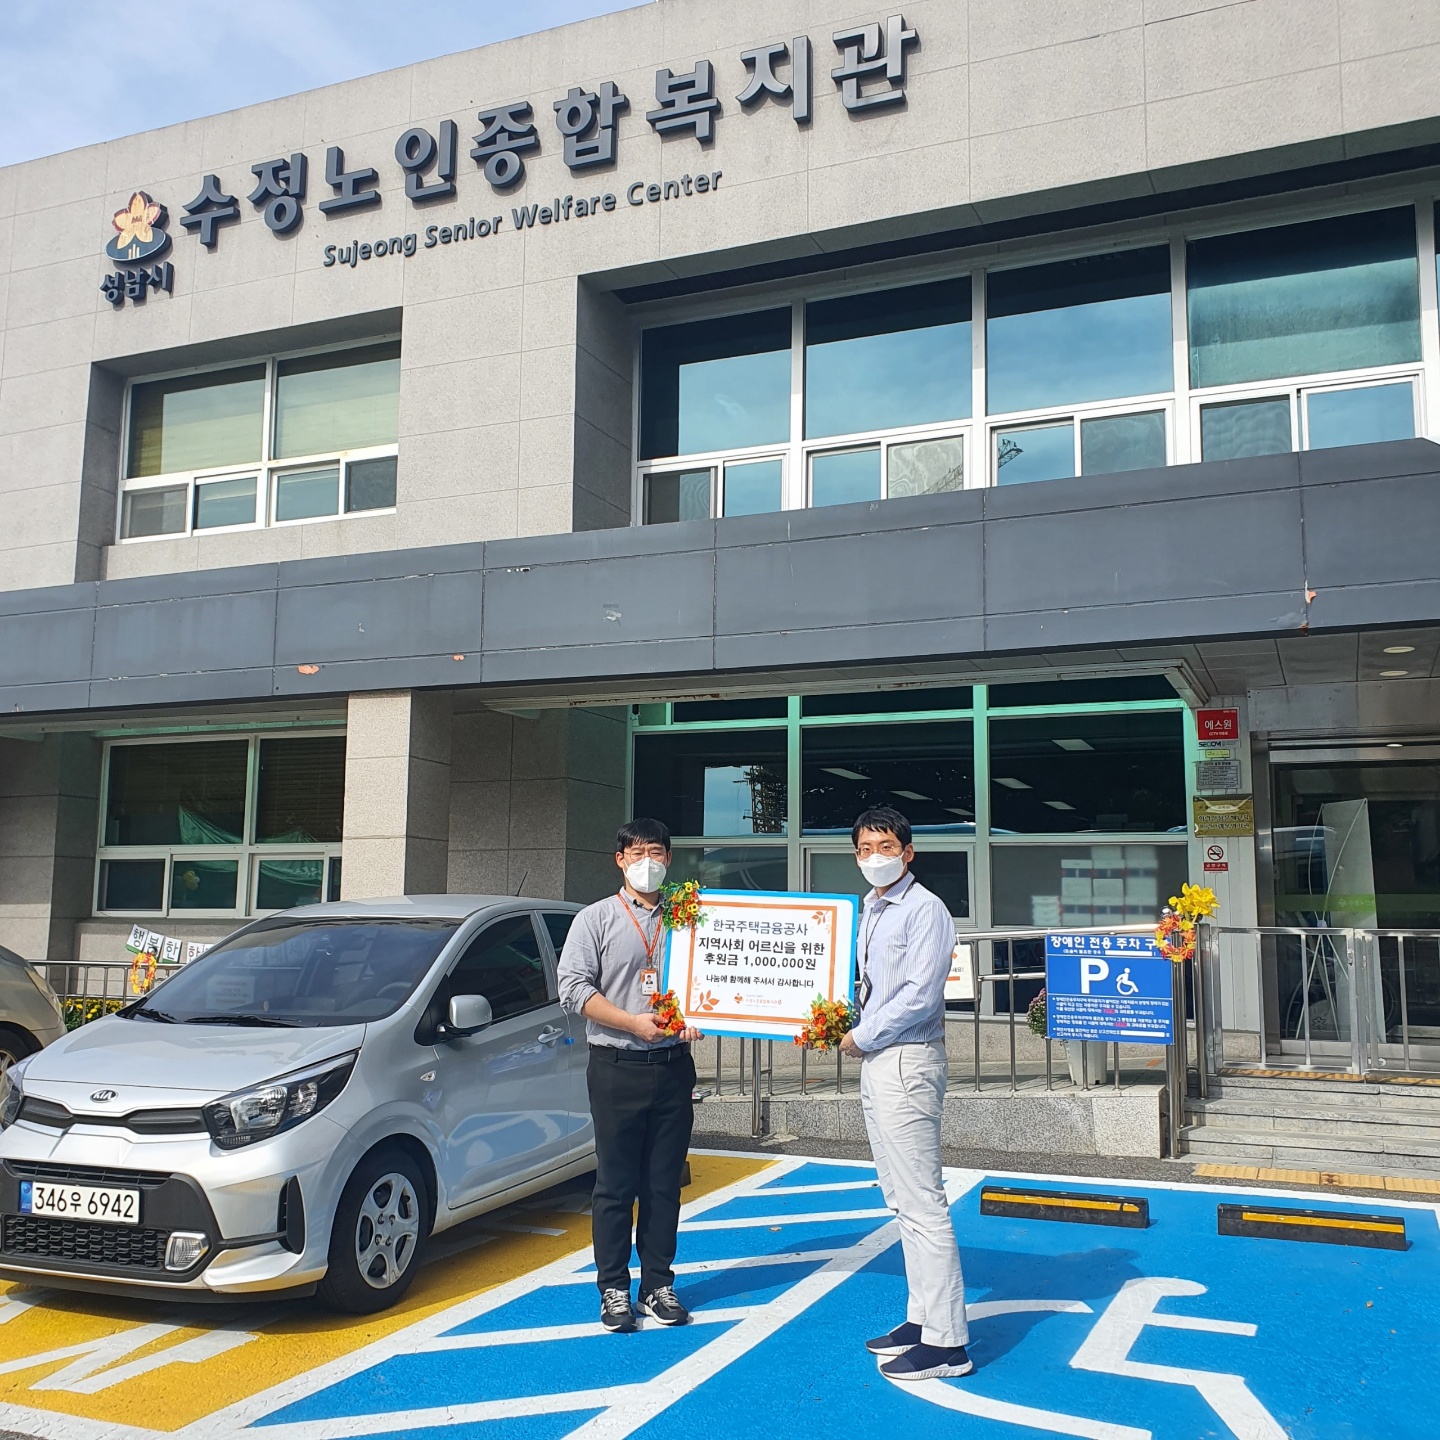 한국주택금융공사 서울남부지사에서 온누리상품권 1,000,000원을 후원해주셨습니다!